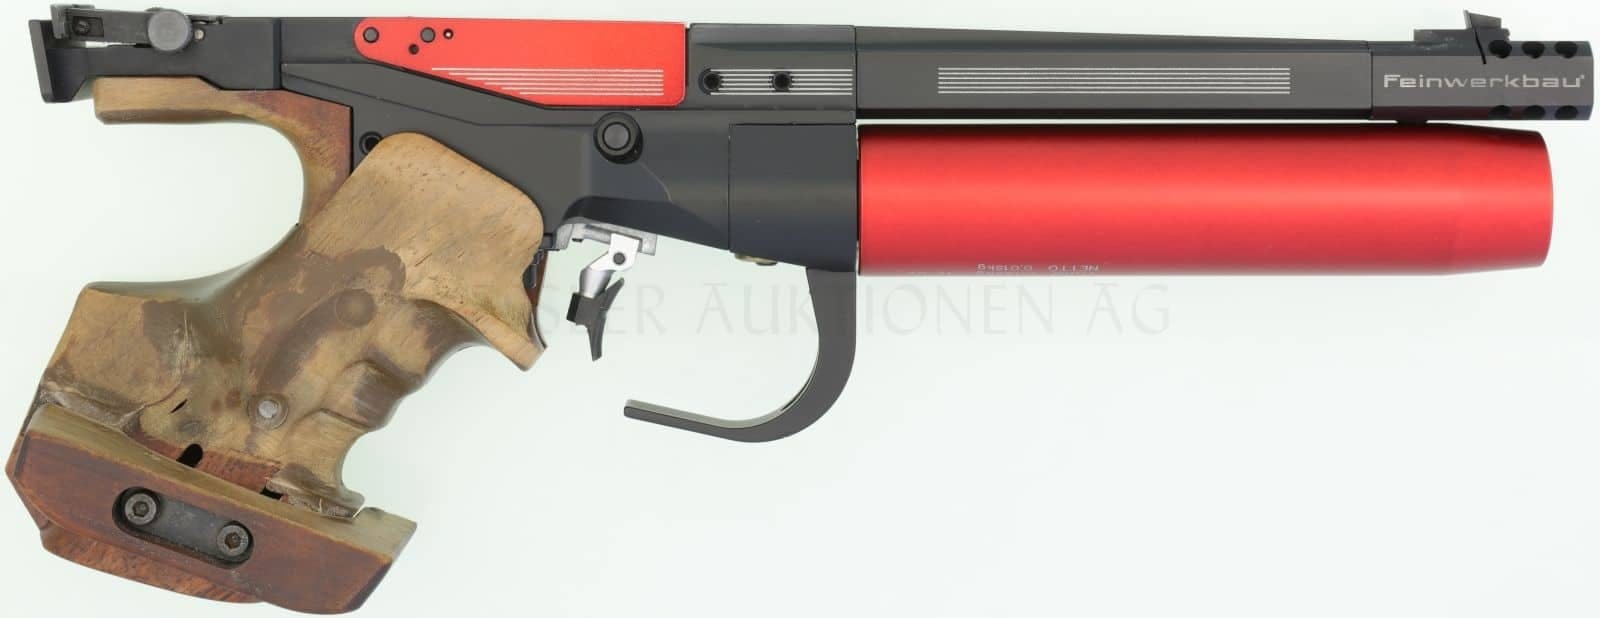 <strong>Druckluftwaffen</strong>
Deutsche Feinwerkbau Modell P34, Druckluftpistole im Kaliber 4.5mm. Luftgewehre werden natürlich gleich behandelt wie Luftpistolen.